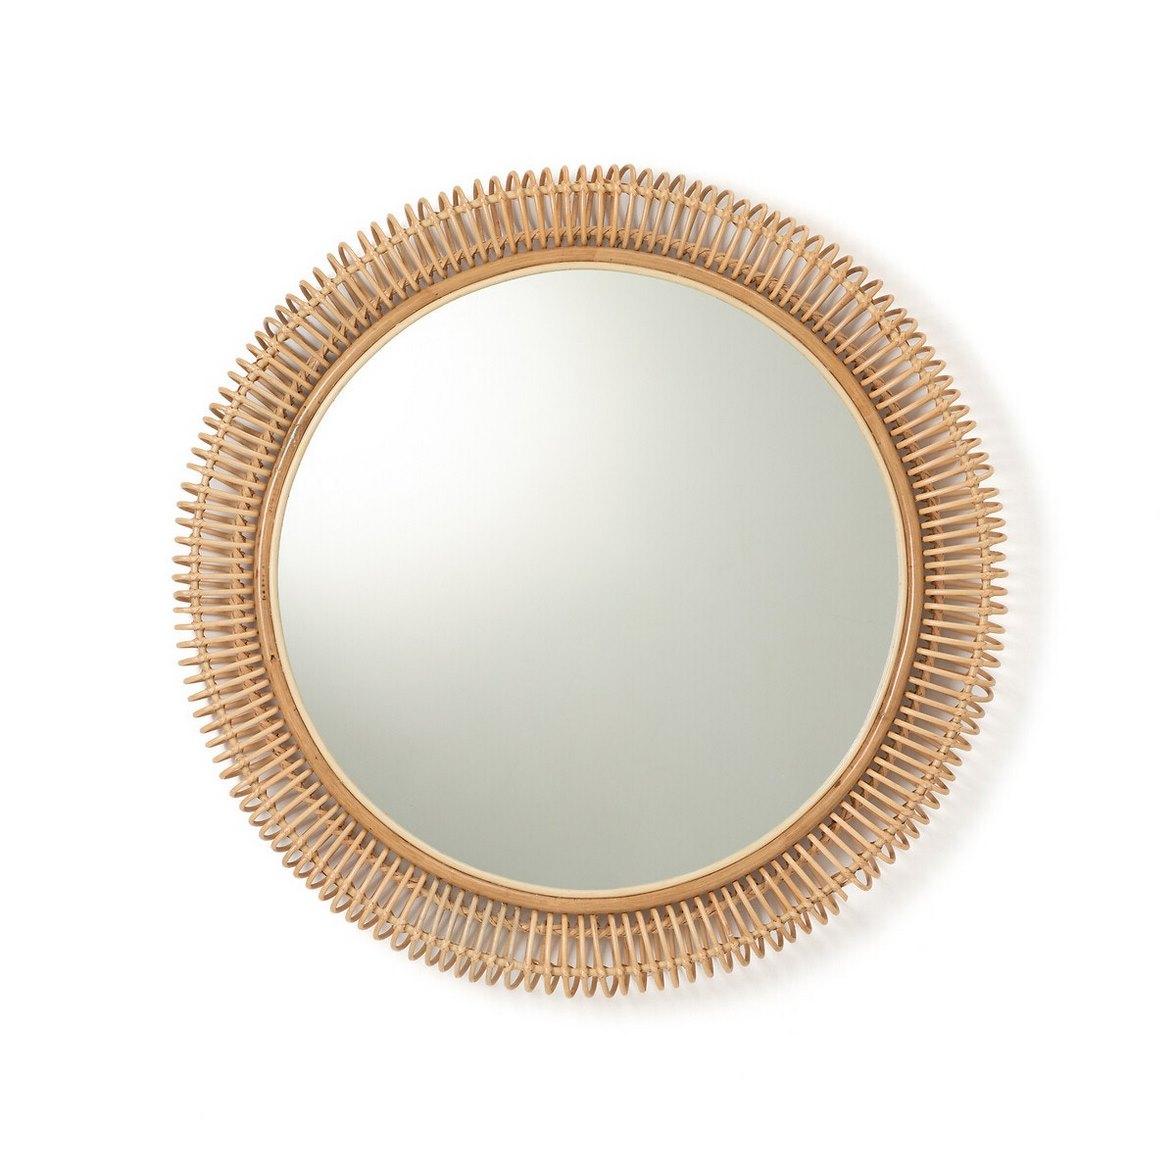 Grand miroir design français composé d'une structure ronde et aérienne en rotin, design bohème chic et style tendance !